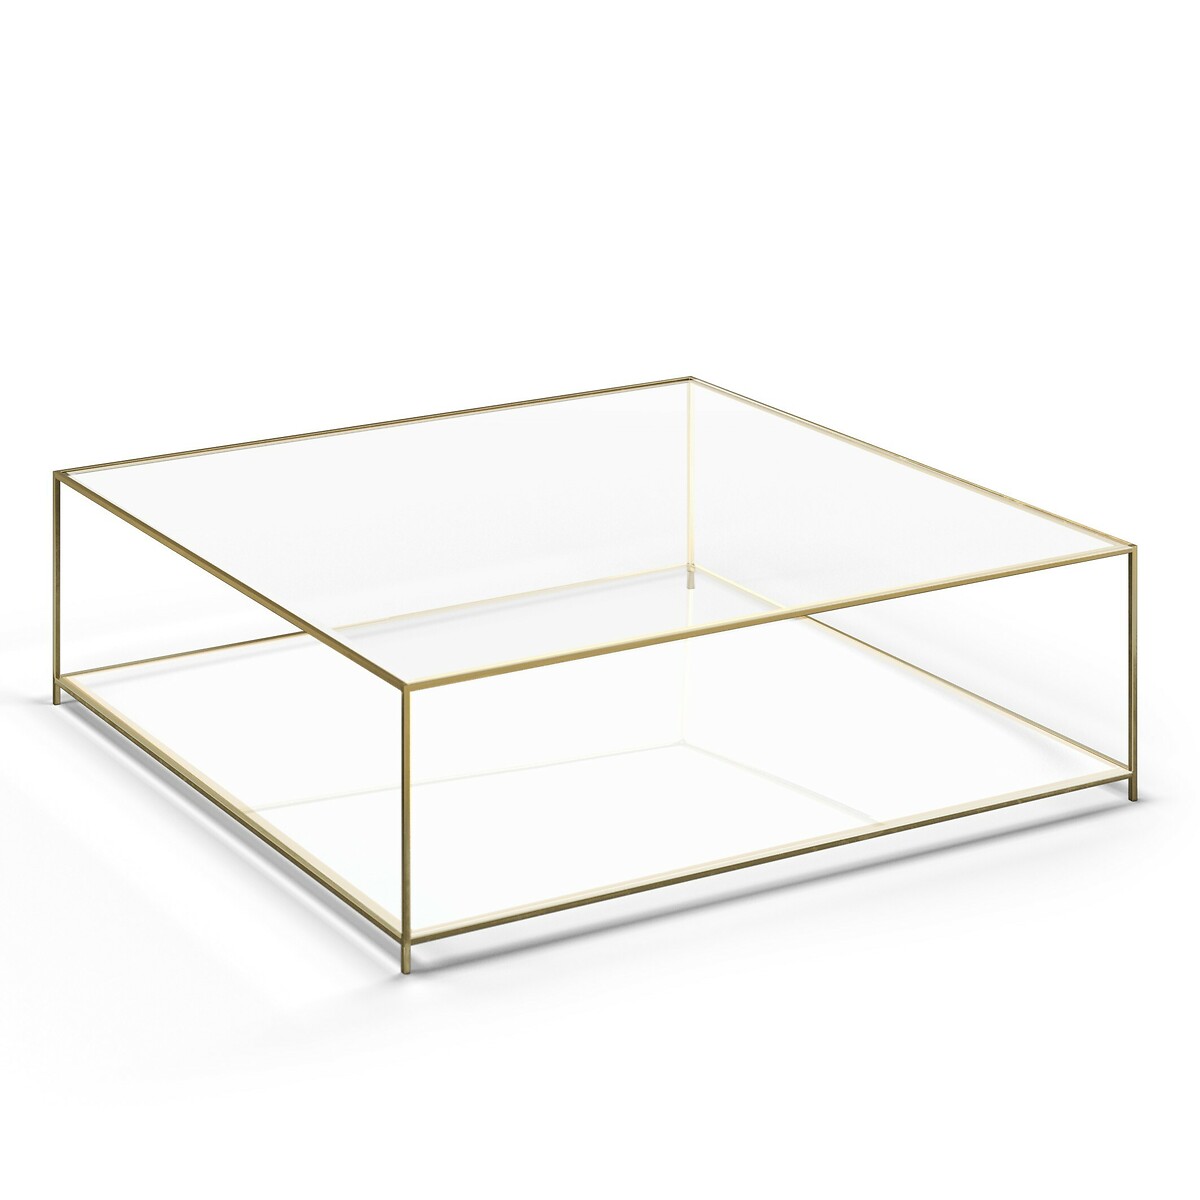 Стол журнальный квадратный из закаленного стекла Sybil единый размер золотистый стол josen 120х60 см единый размер золотистый